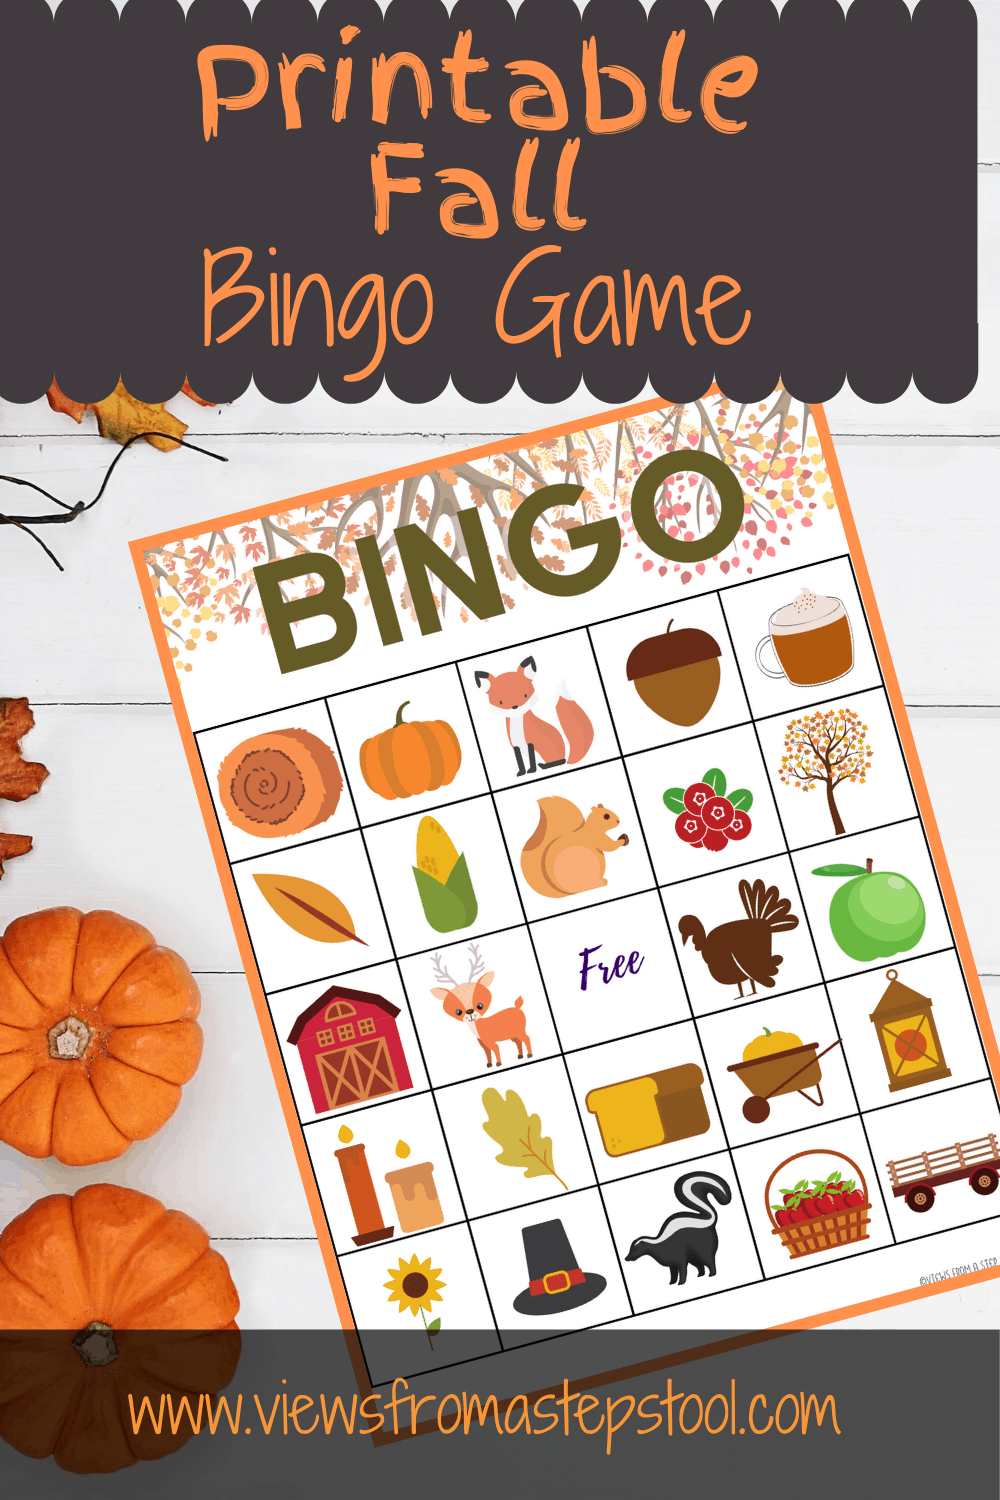 Printable Fall Bingo Game for Kids